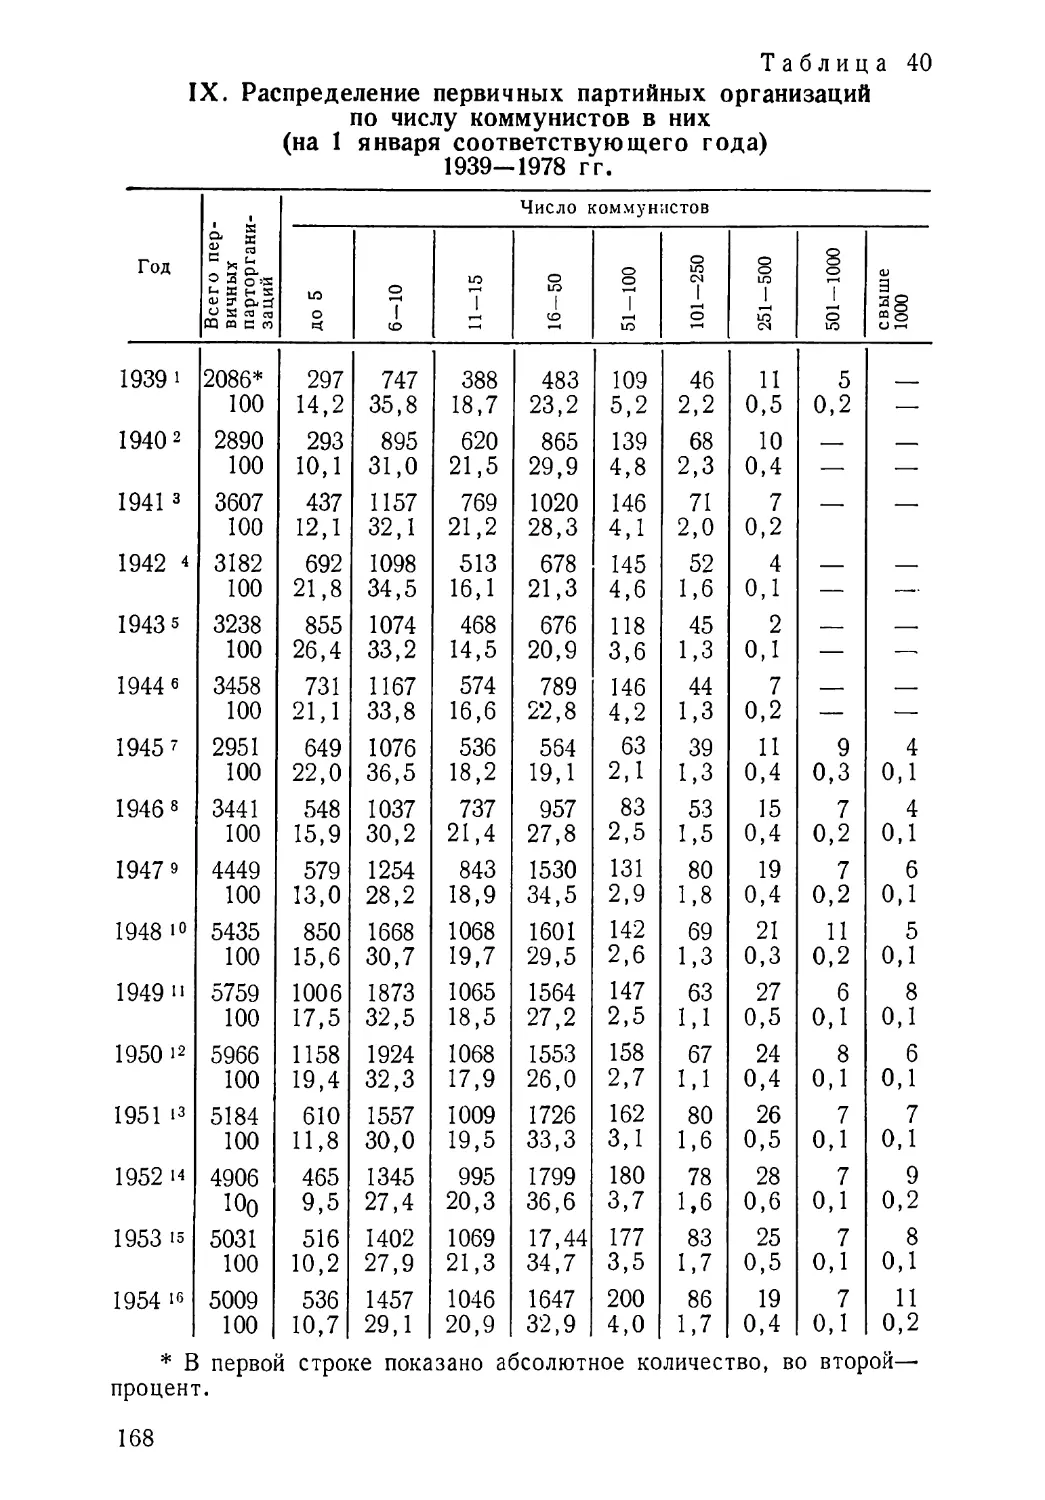 Распределение первичных партийных организаций по числу коммунистов в них 1939—1978 гг. Таблица 40